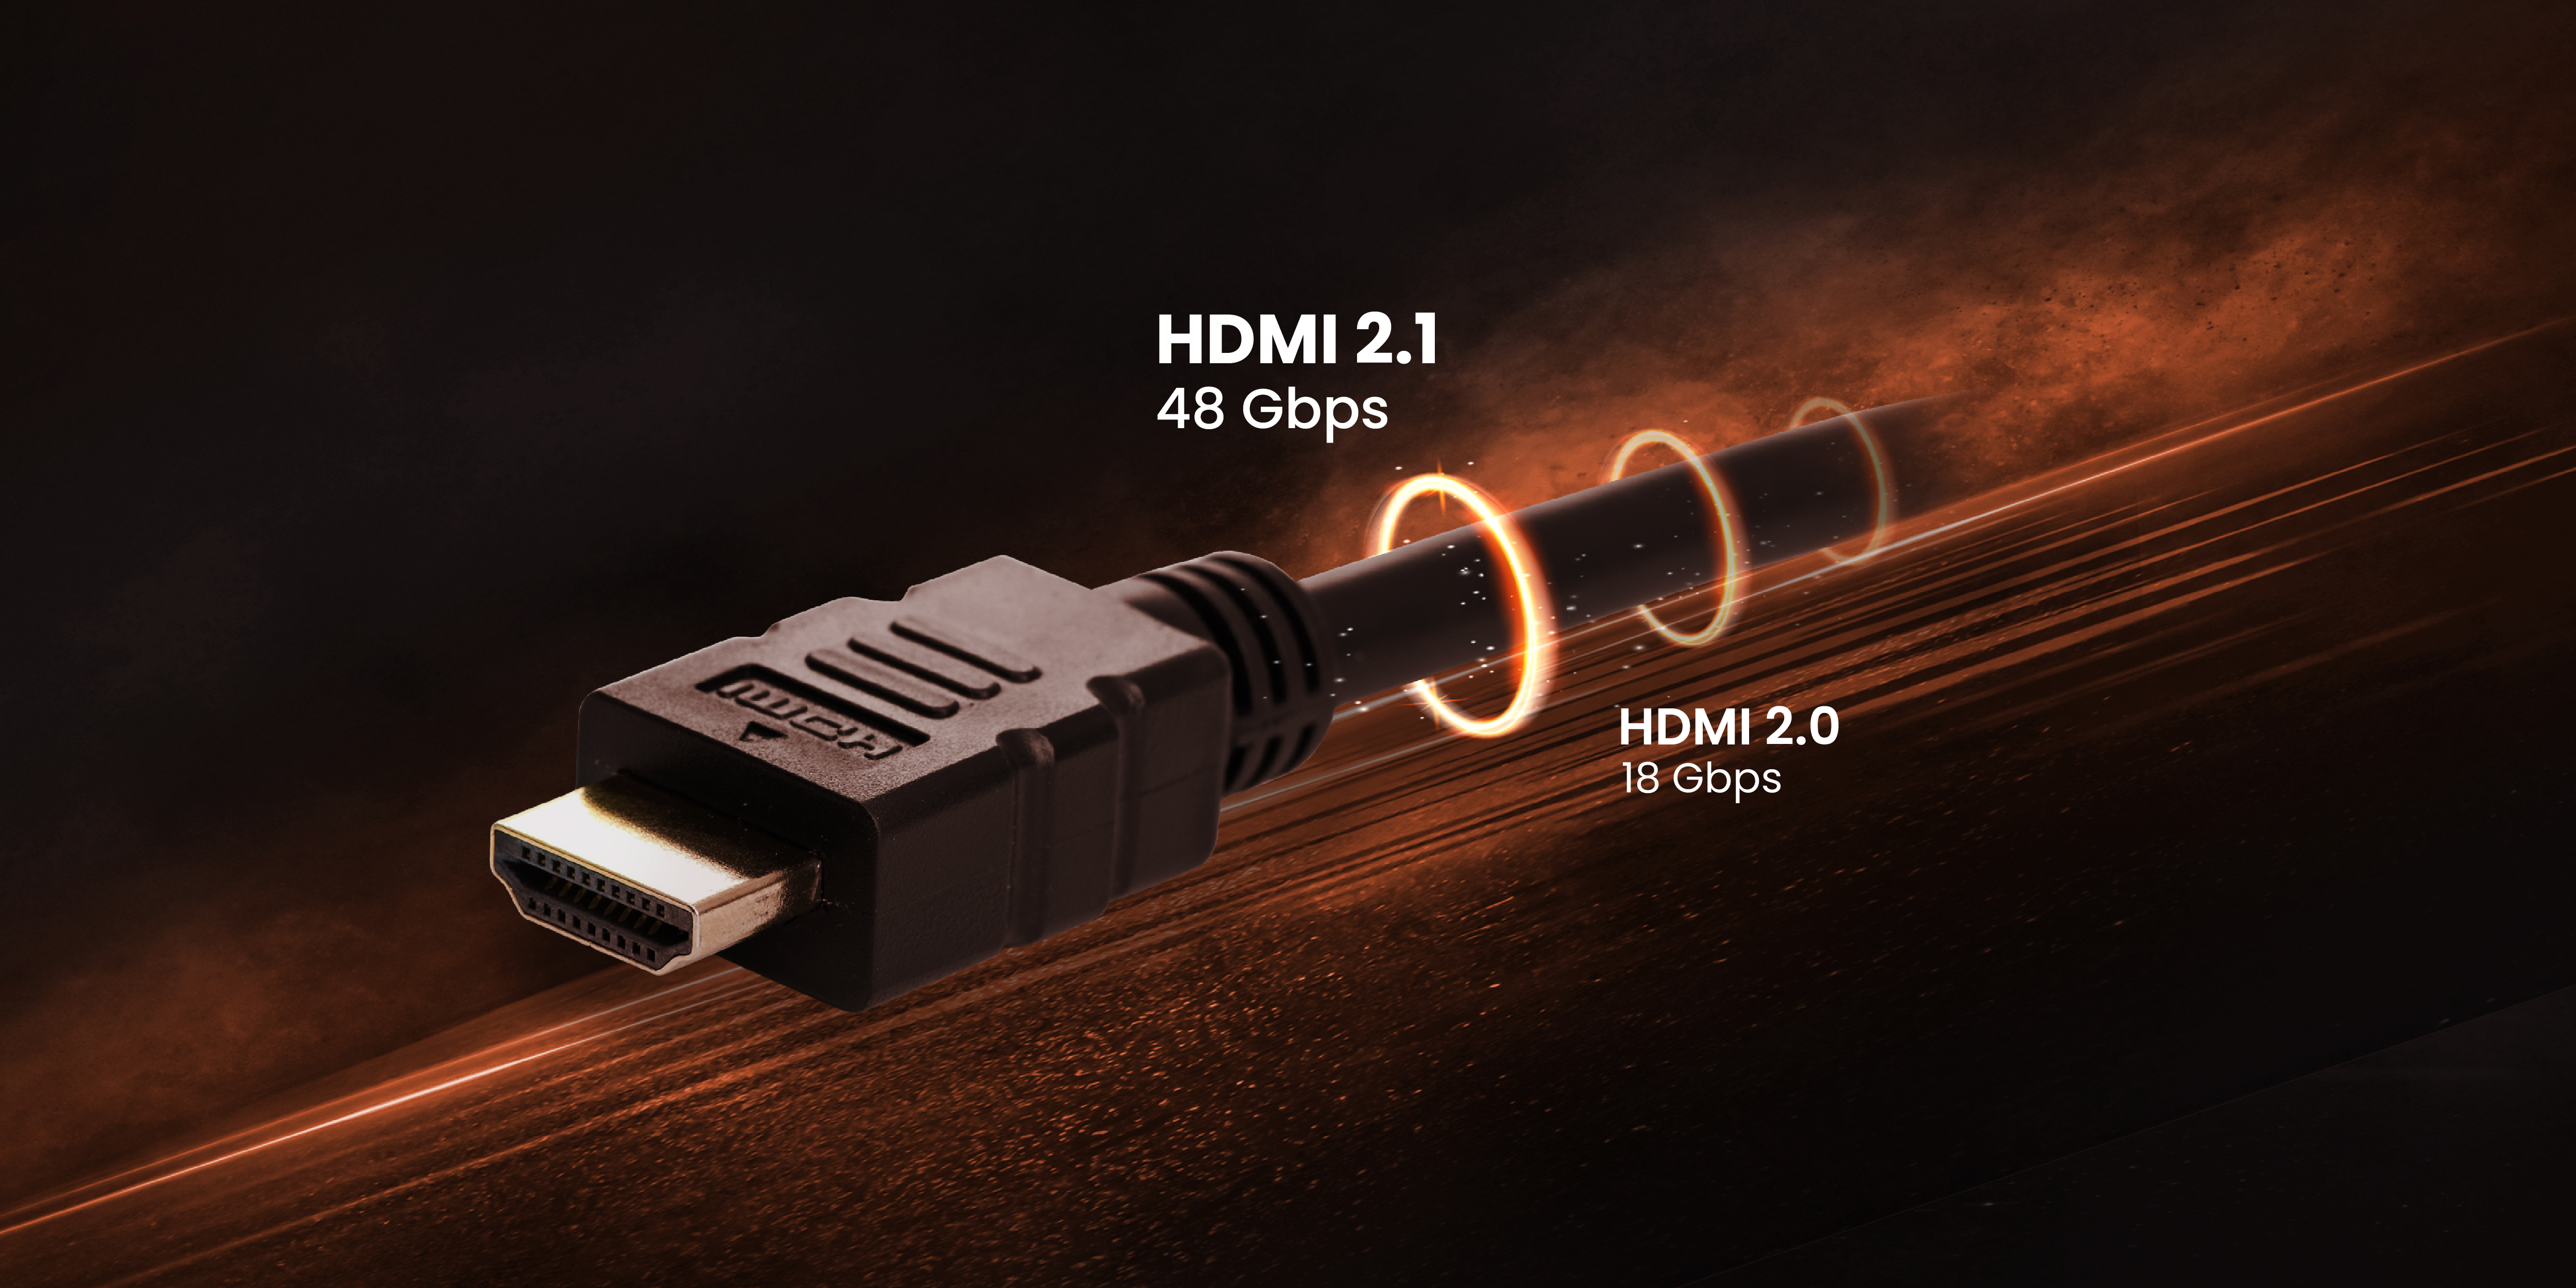 Roux etiqueta calentar Cuándo necesito realmente HDMI 2.1 o me basta con HDMI 2.0? | BenQ España